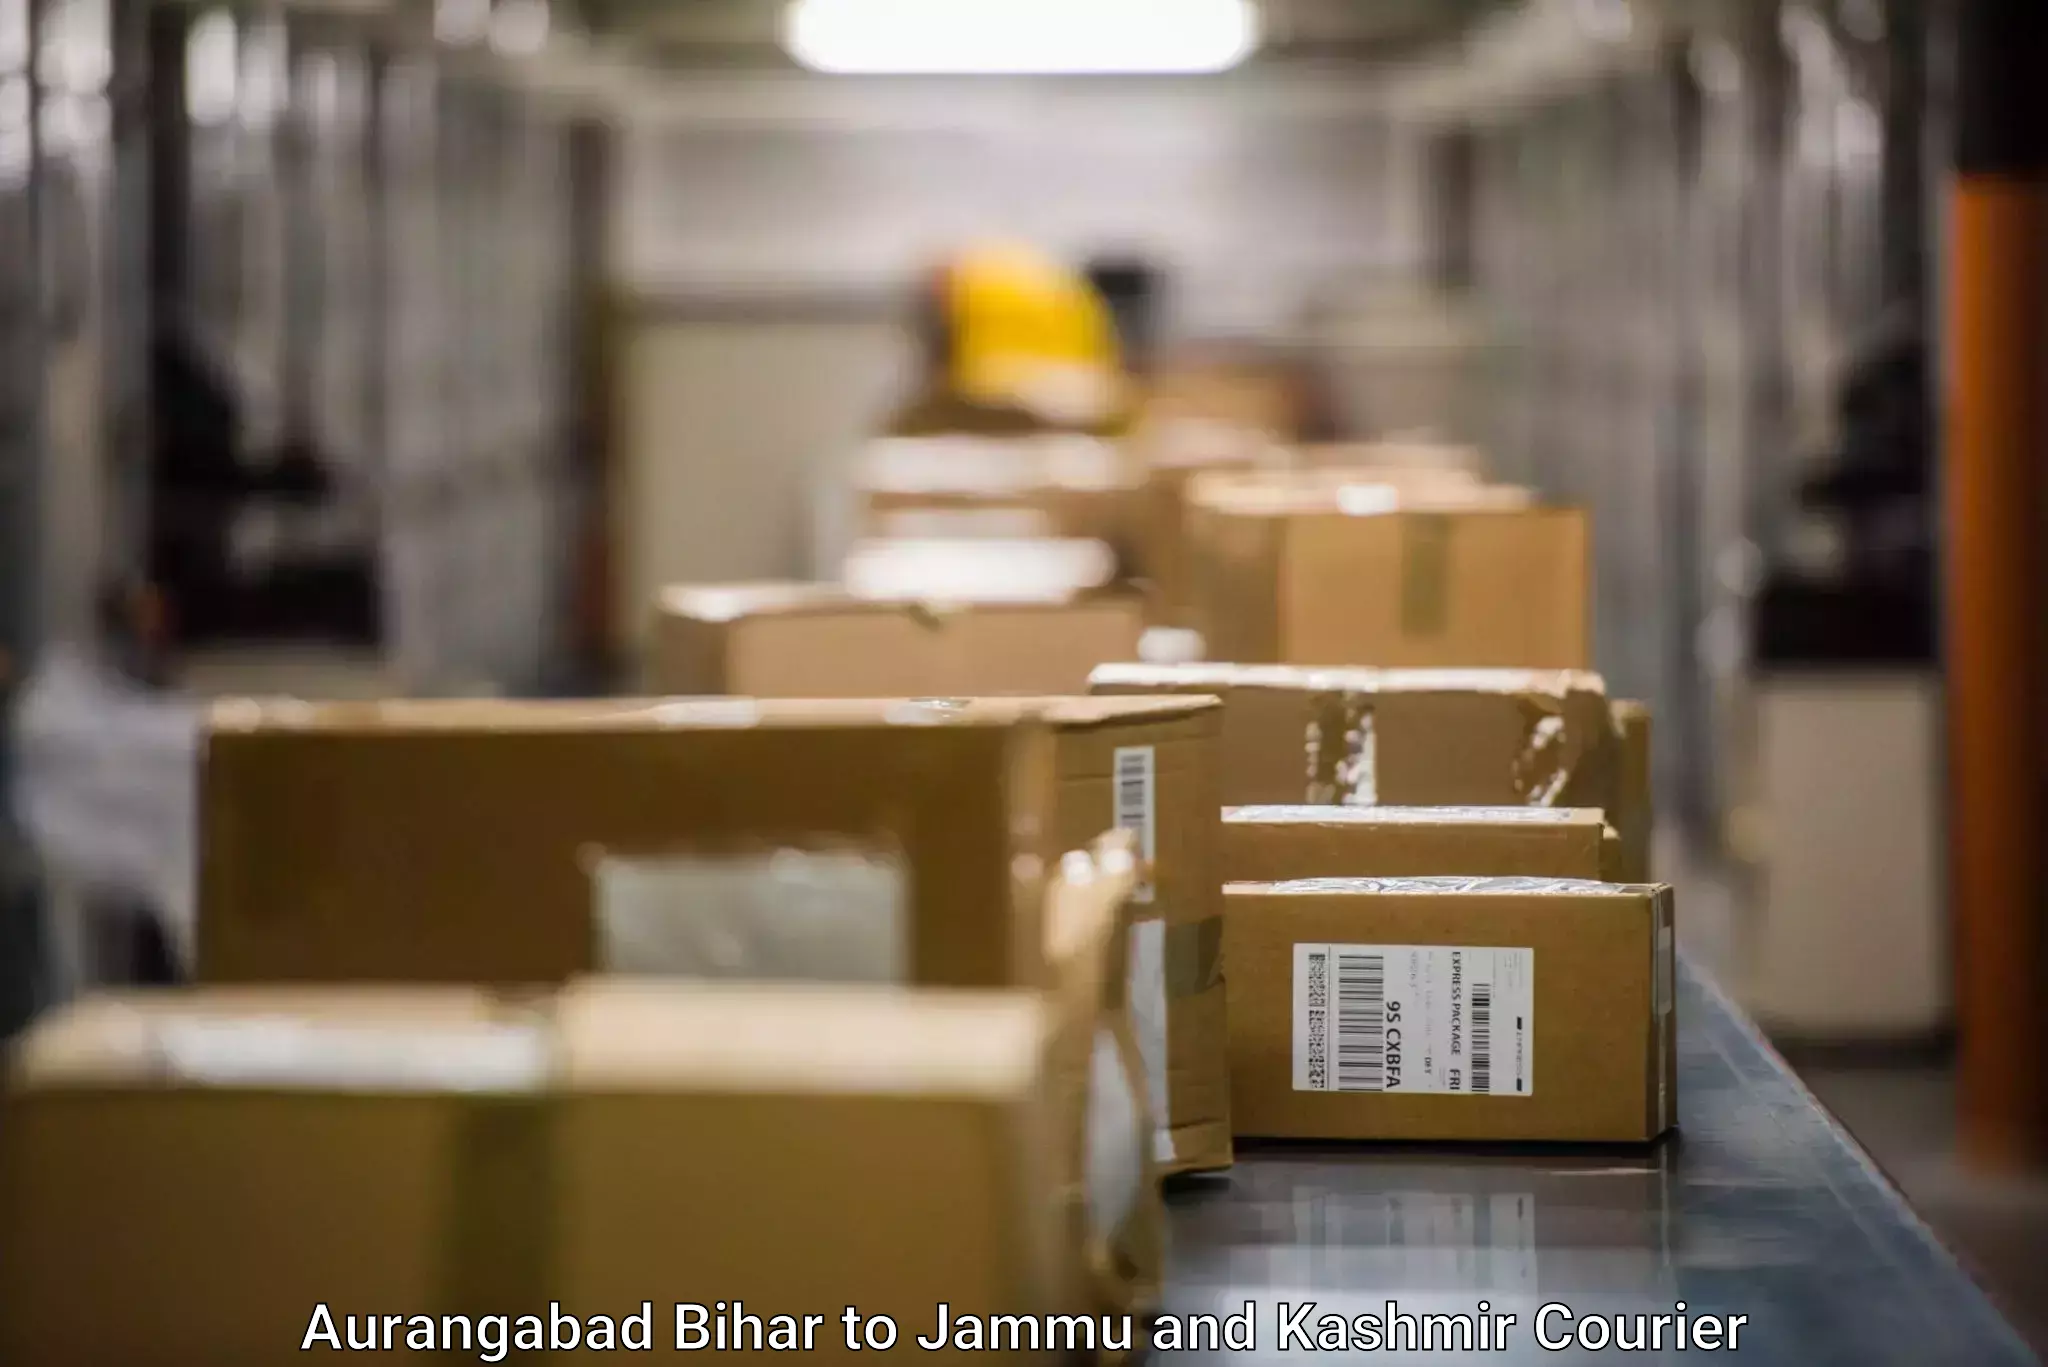 Small business couriers Aurangabad Bihar to Srinagar Kashmir